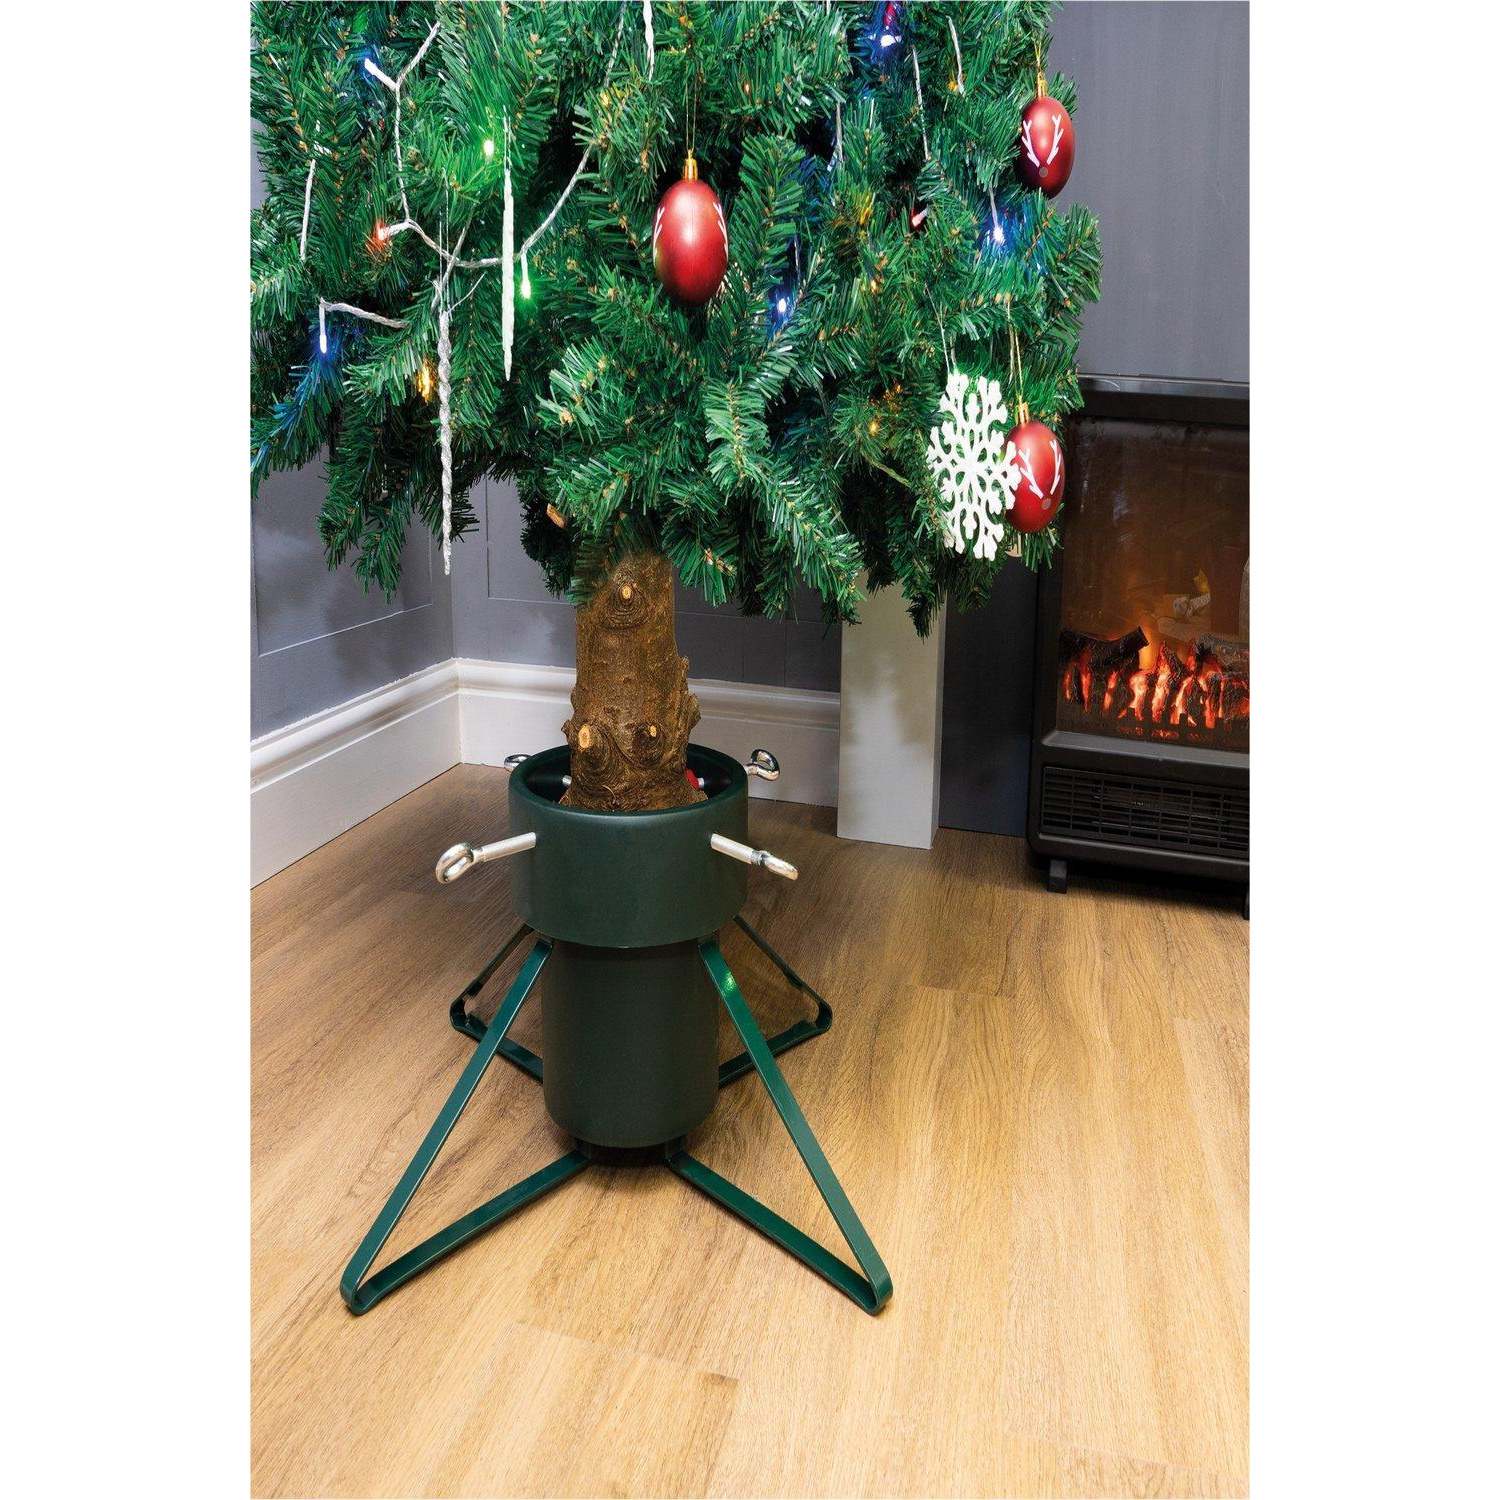 Christmas Tree Stand - image 1